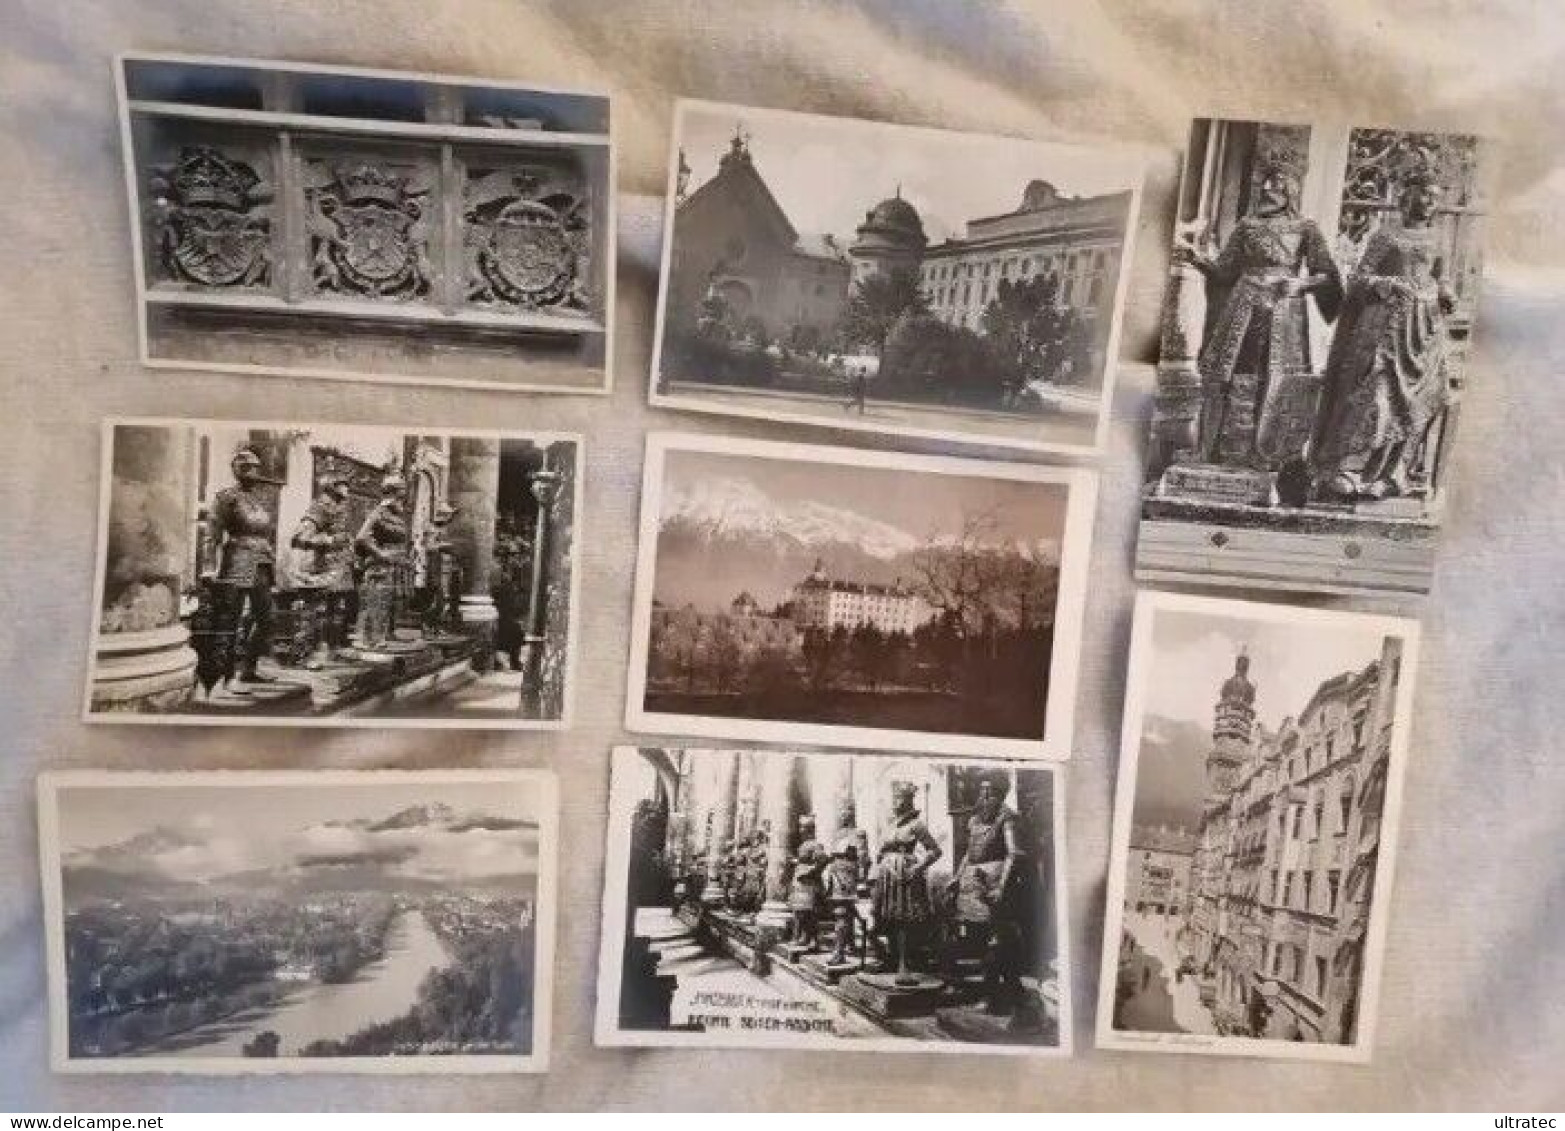 130 Stück alte AK Postkarten "ÖSTERREICH" Ansichtskarten Lot Sammlung Konvolut